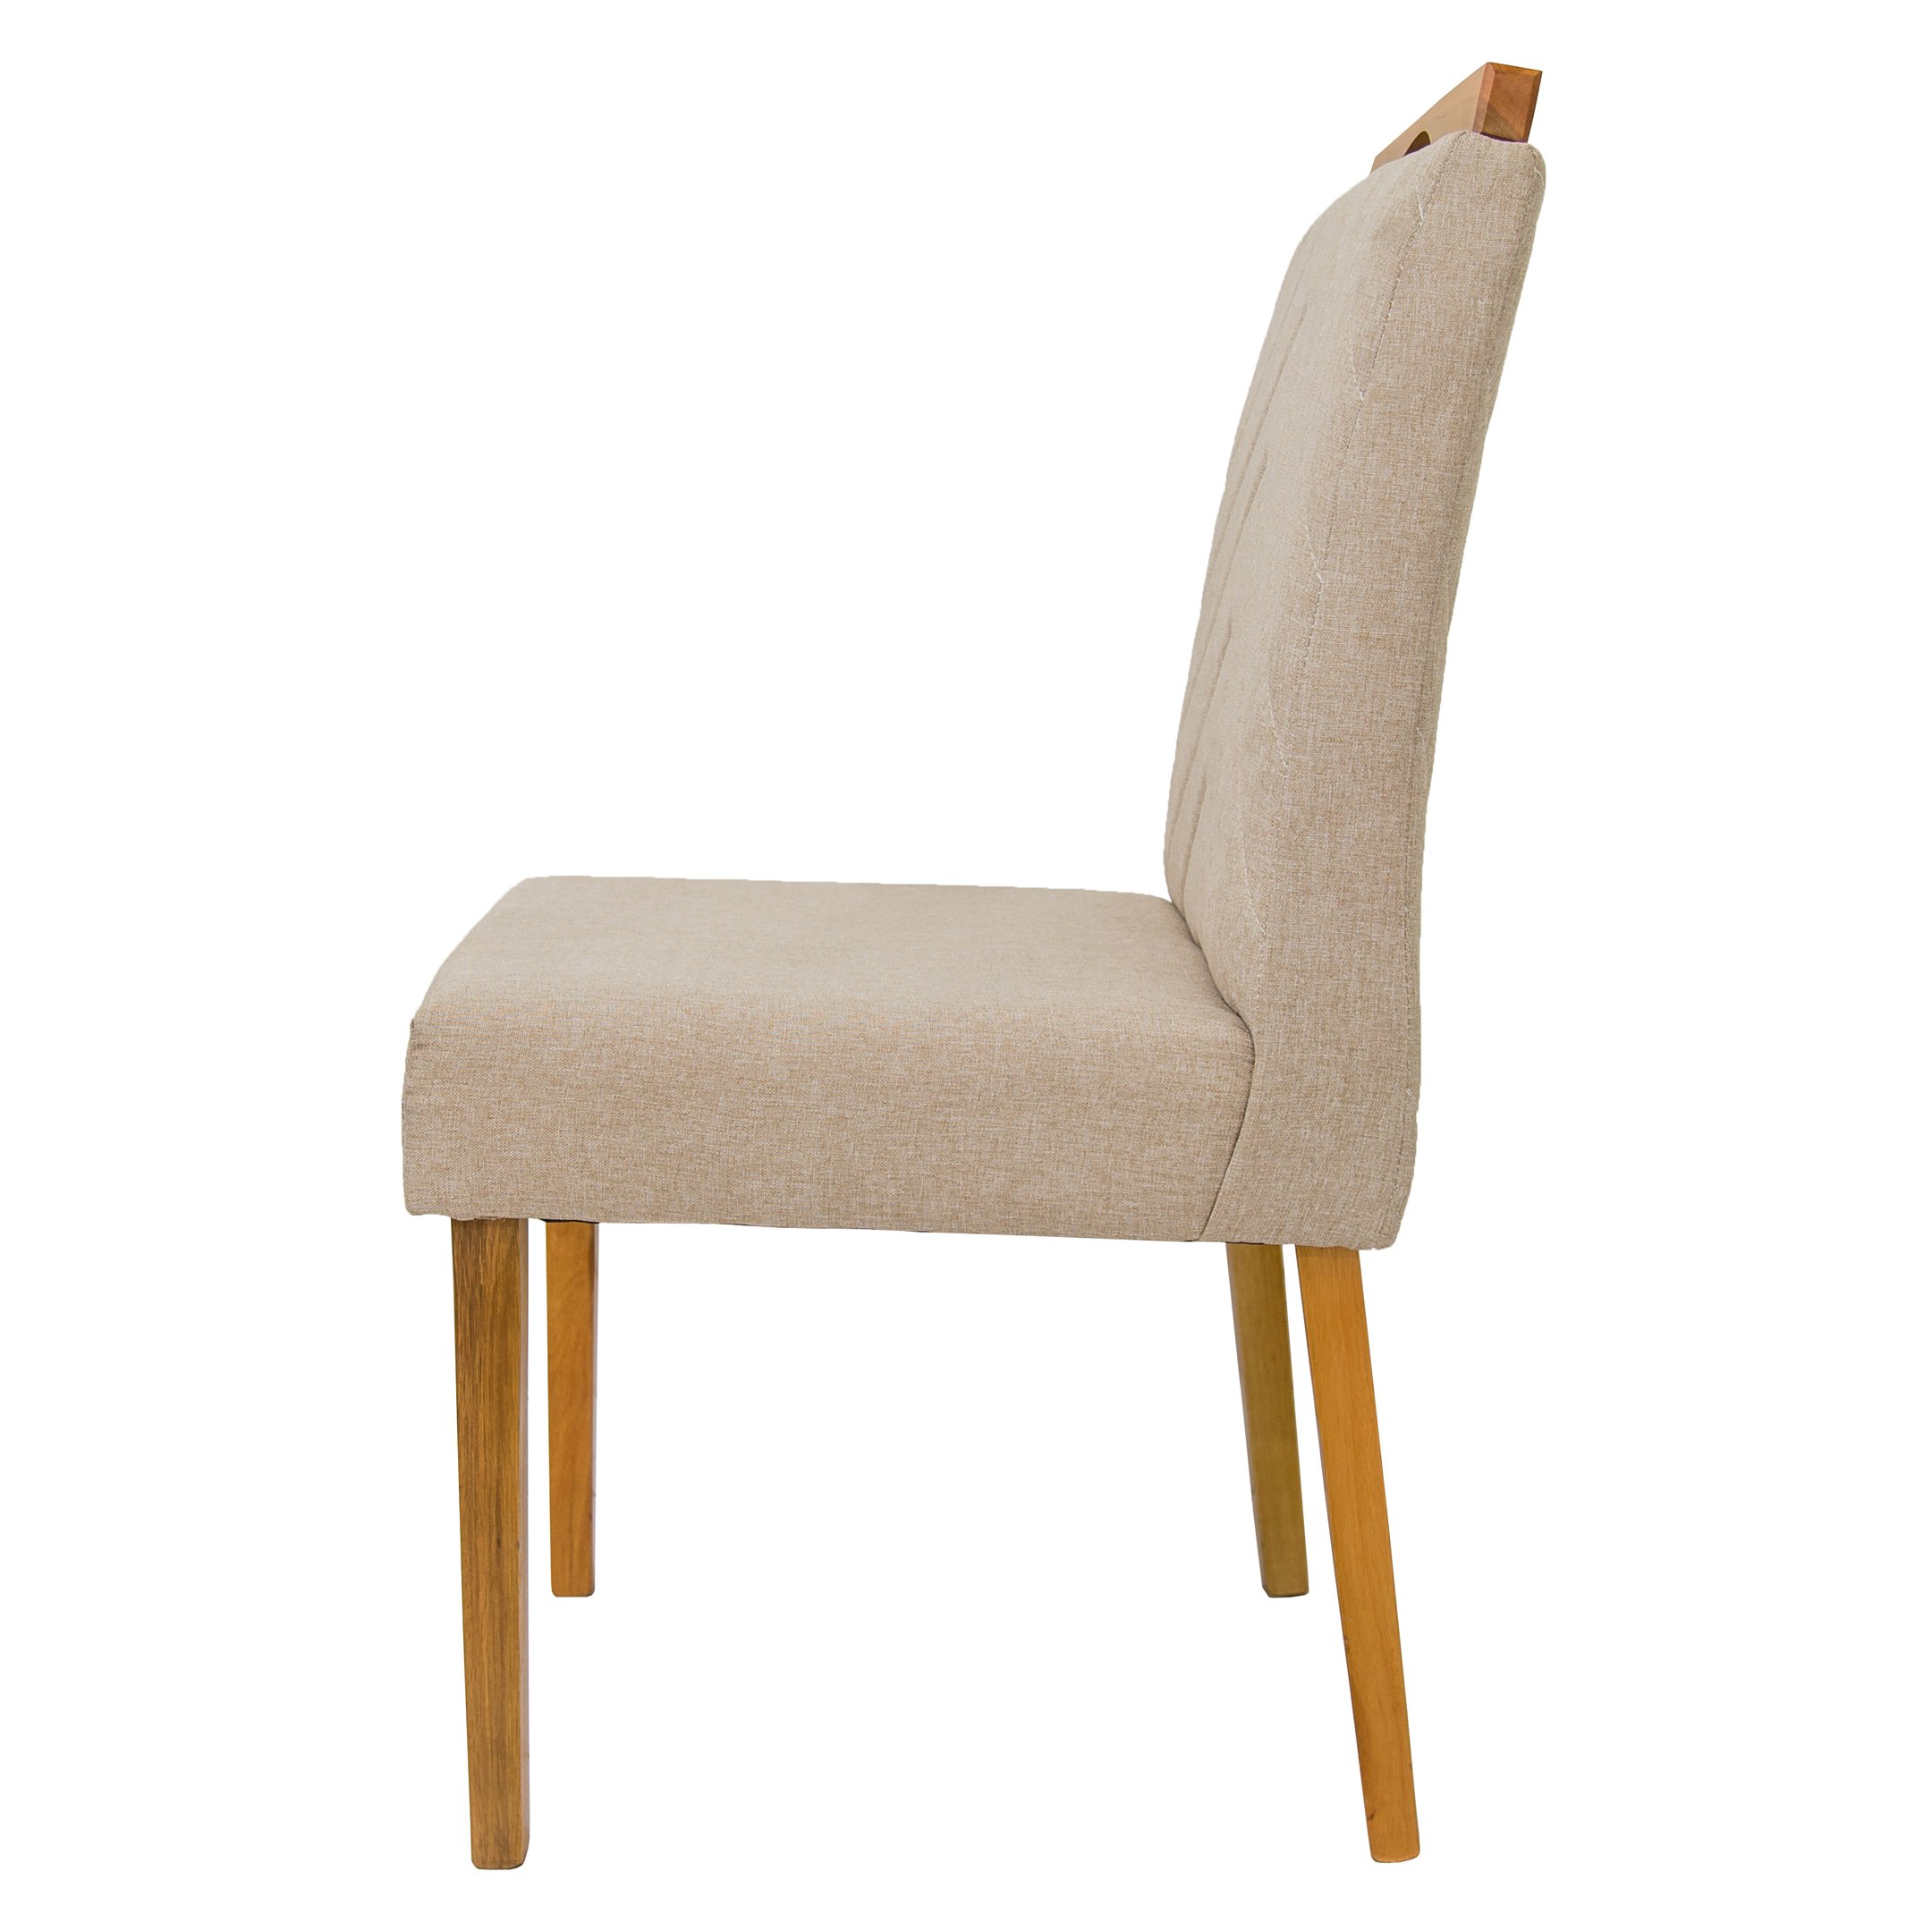 02 cadeiras de jantar Verônica em madeira maciça com revestimento em tecido linho Ferrugine Design - 3